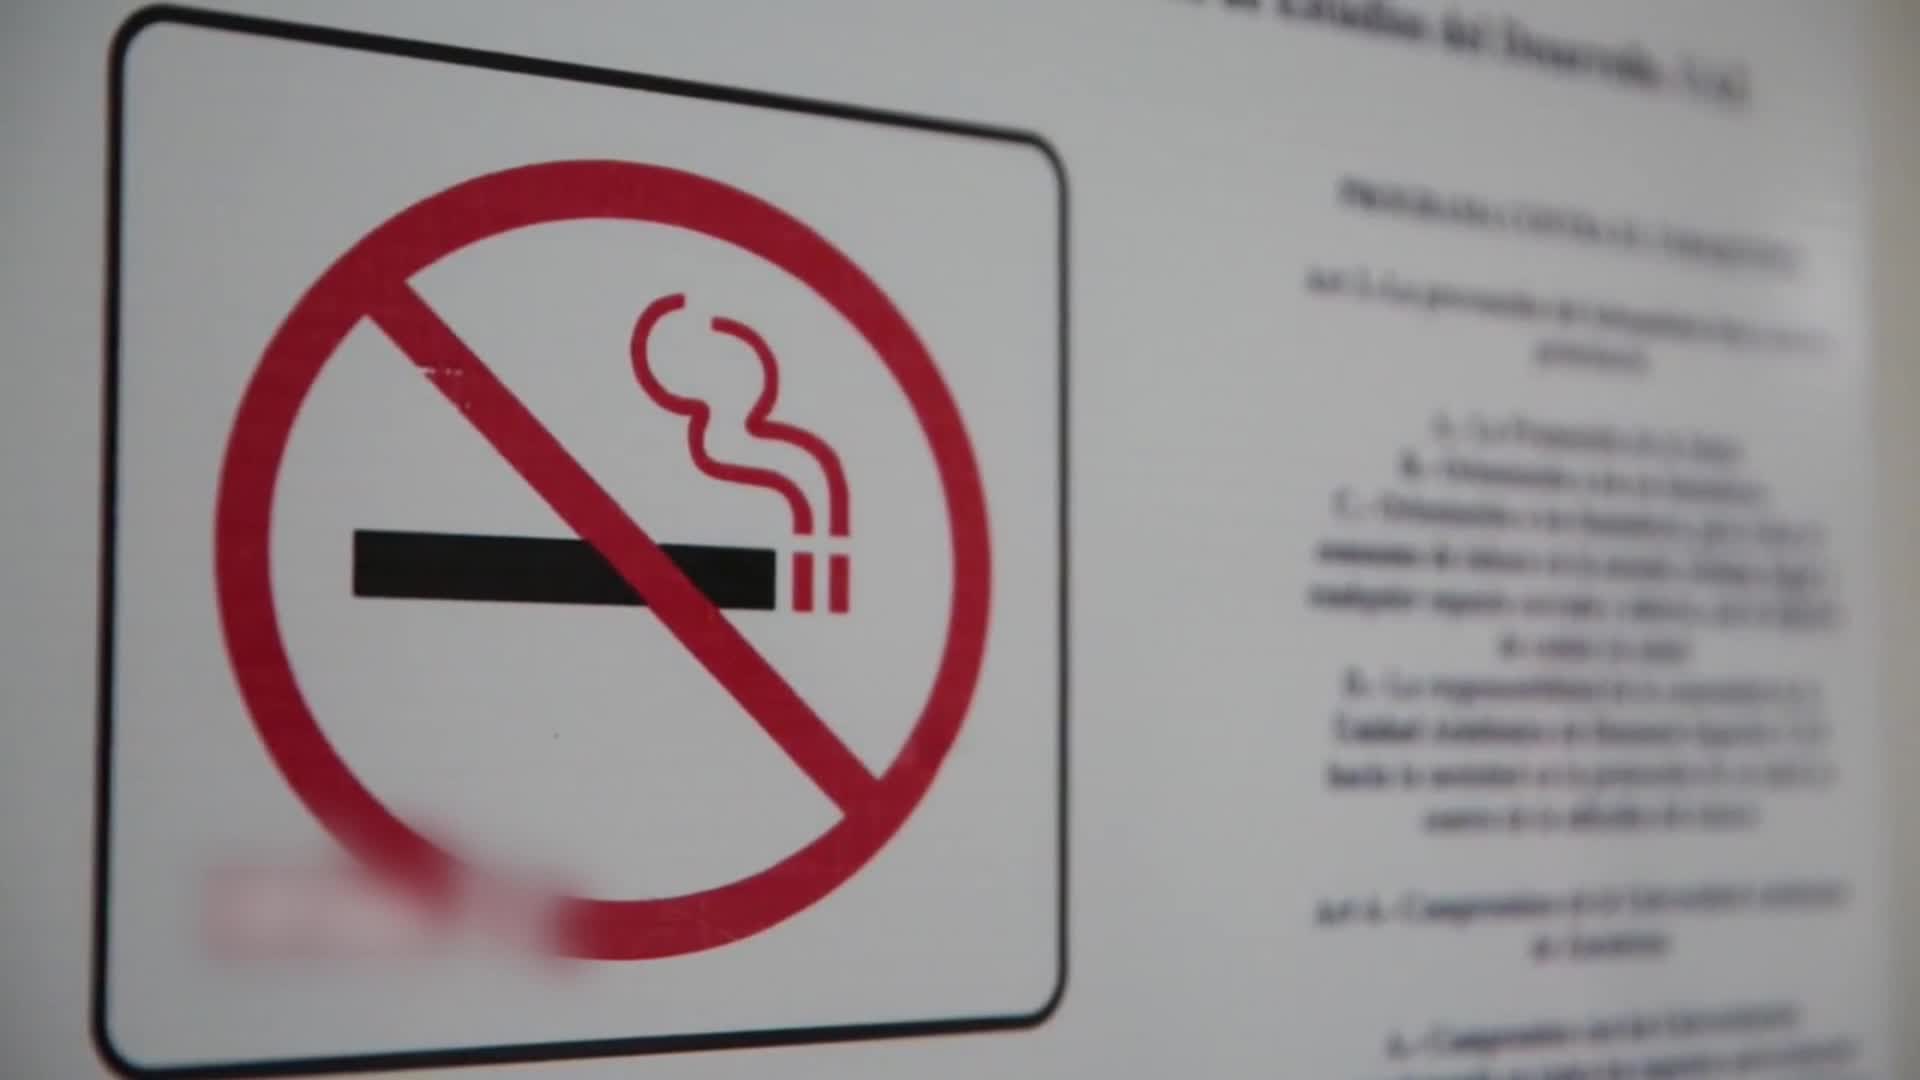 Tabaquismo: programa libre de humo y tabaco